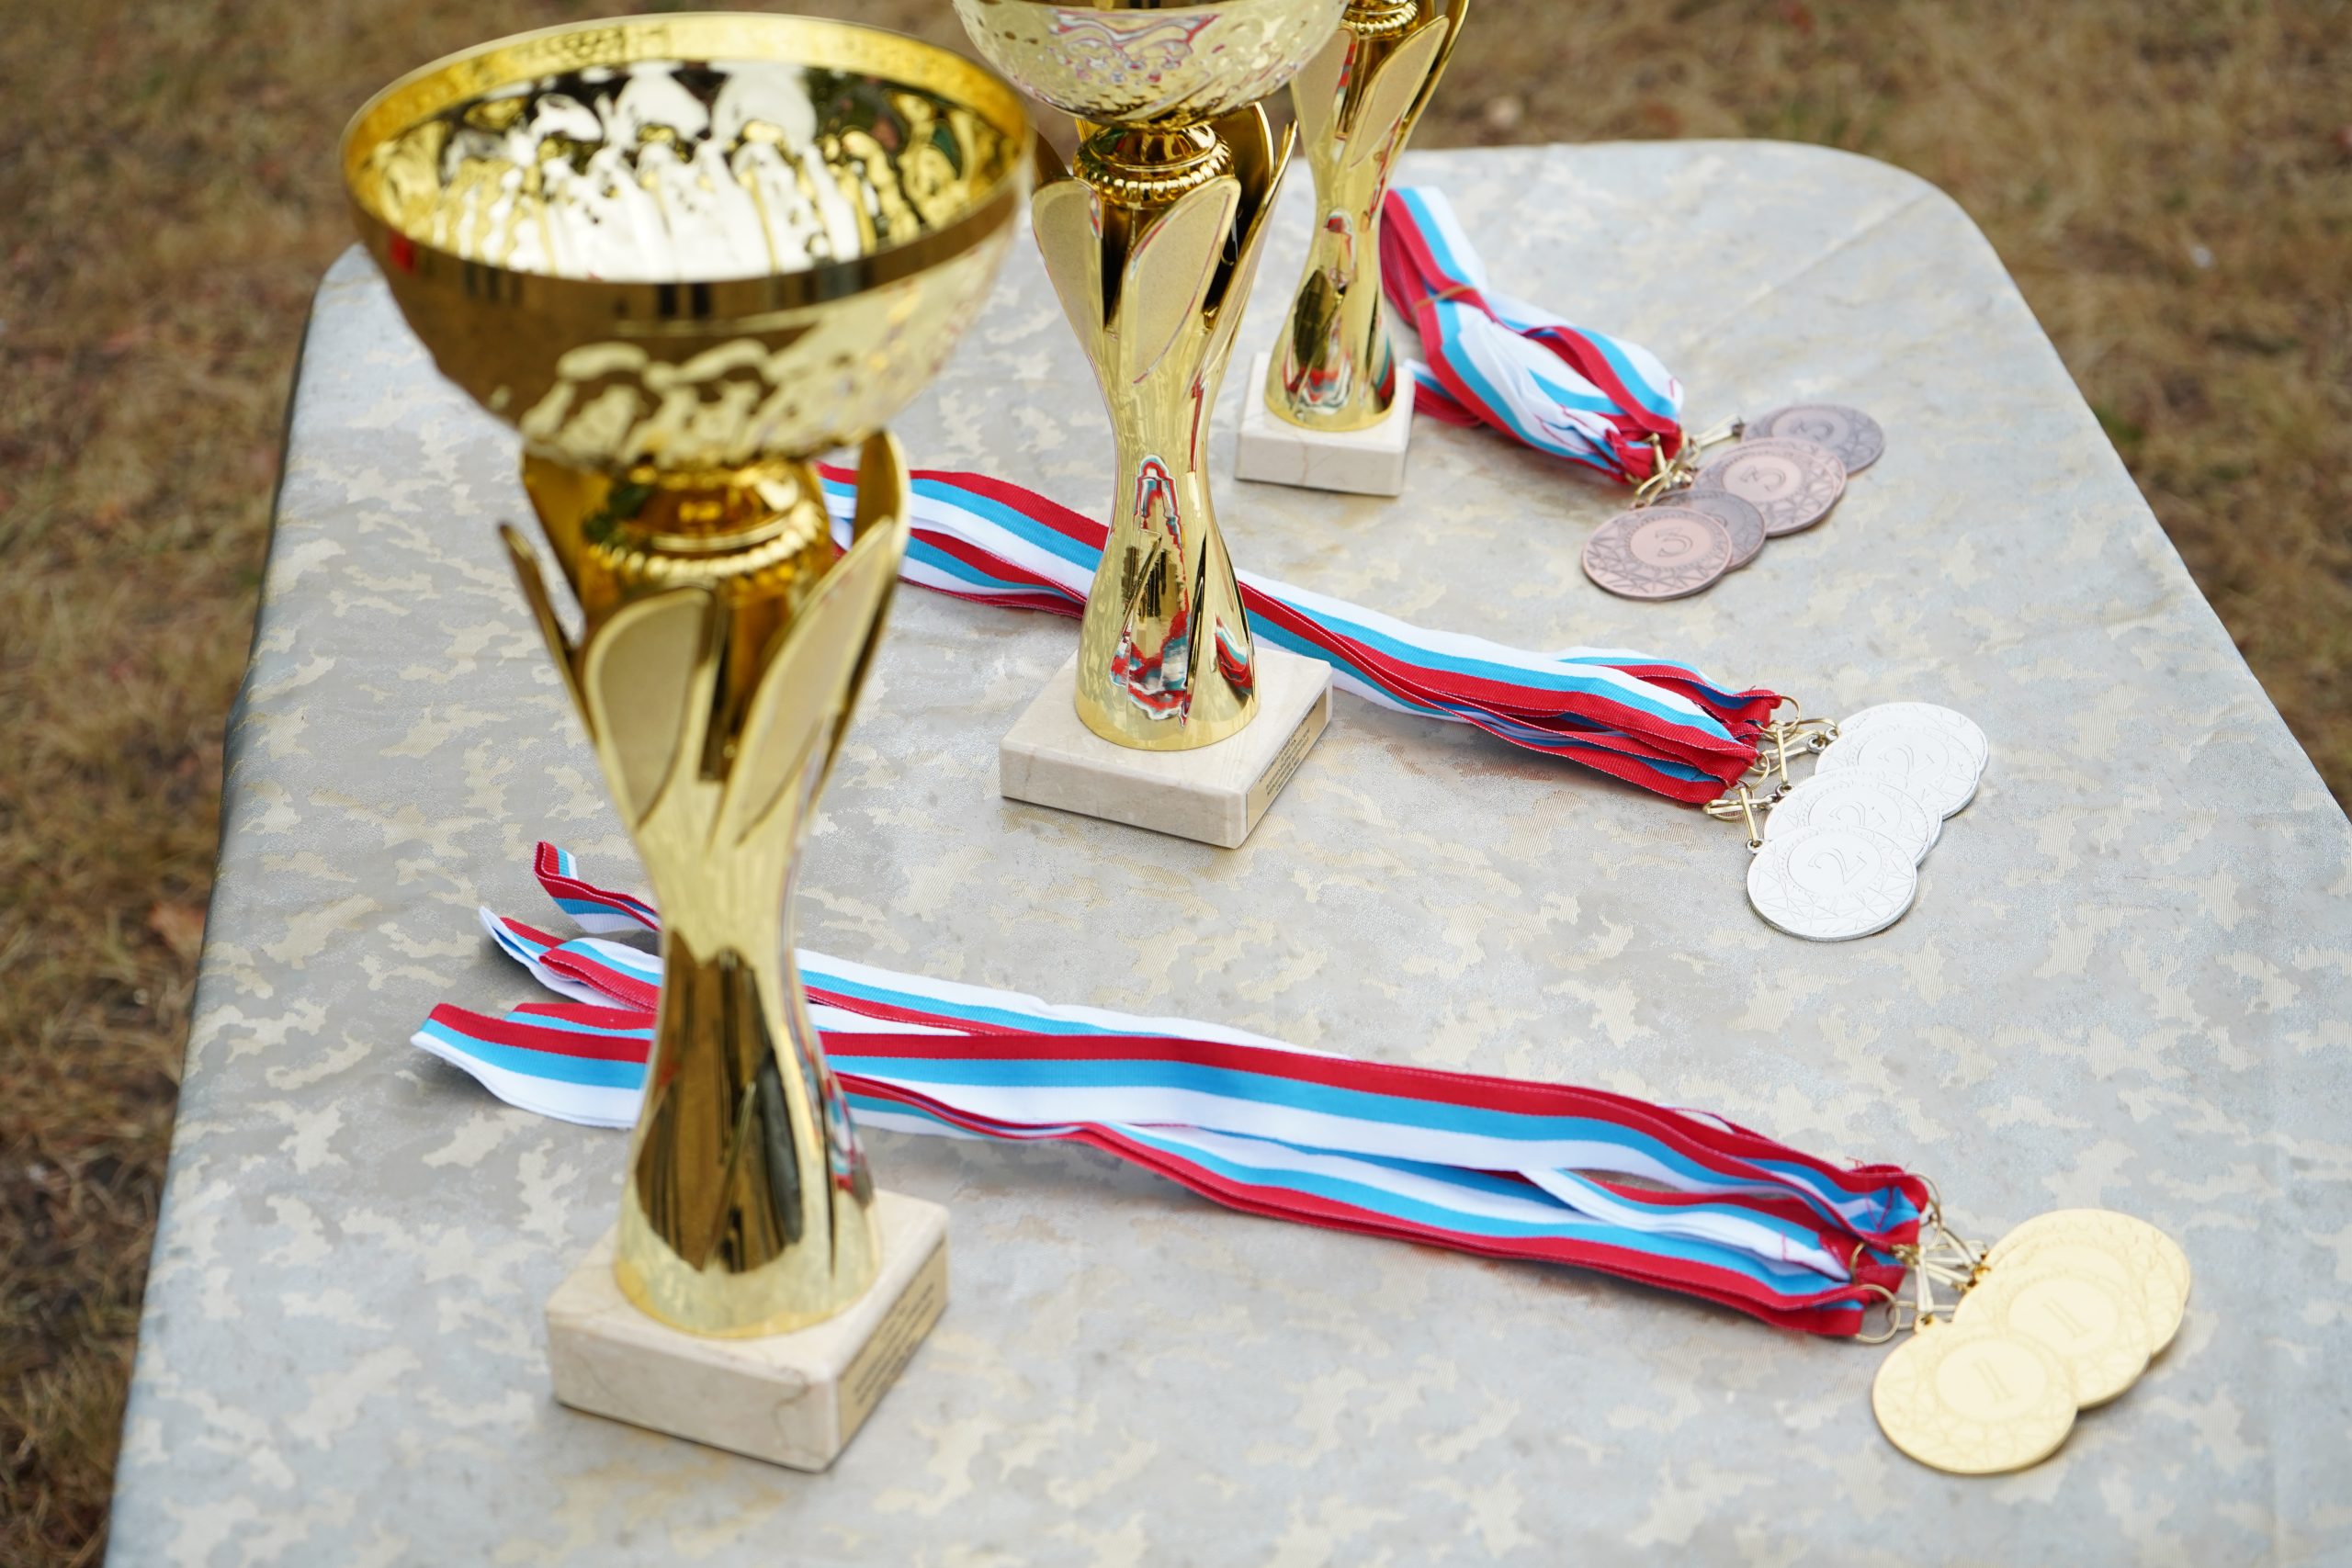 Вороновцы заняли призовое место в турнире по волейболу